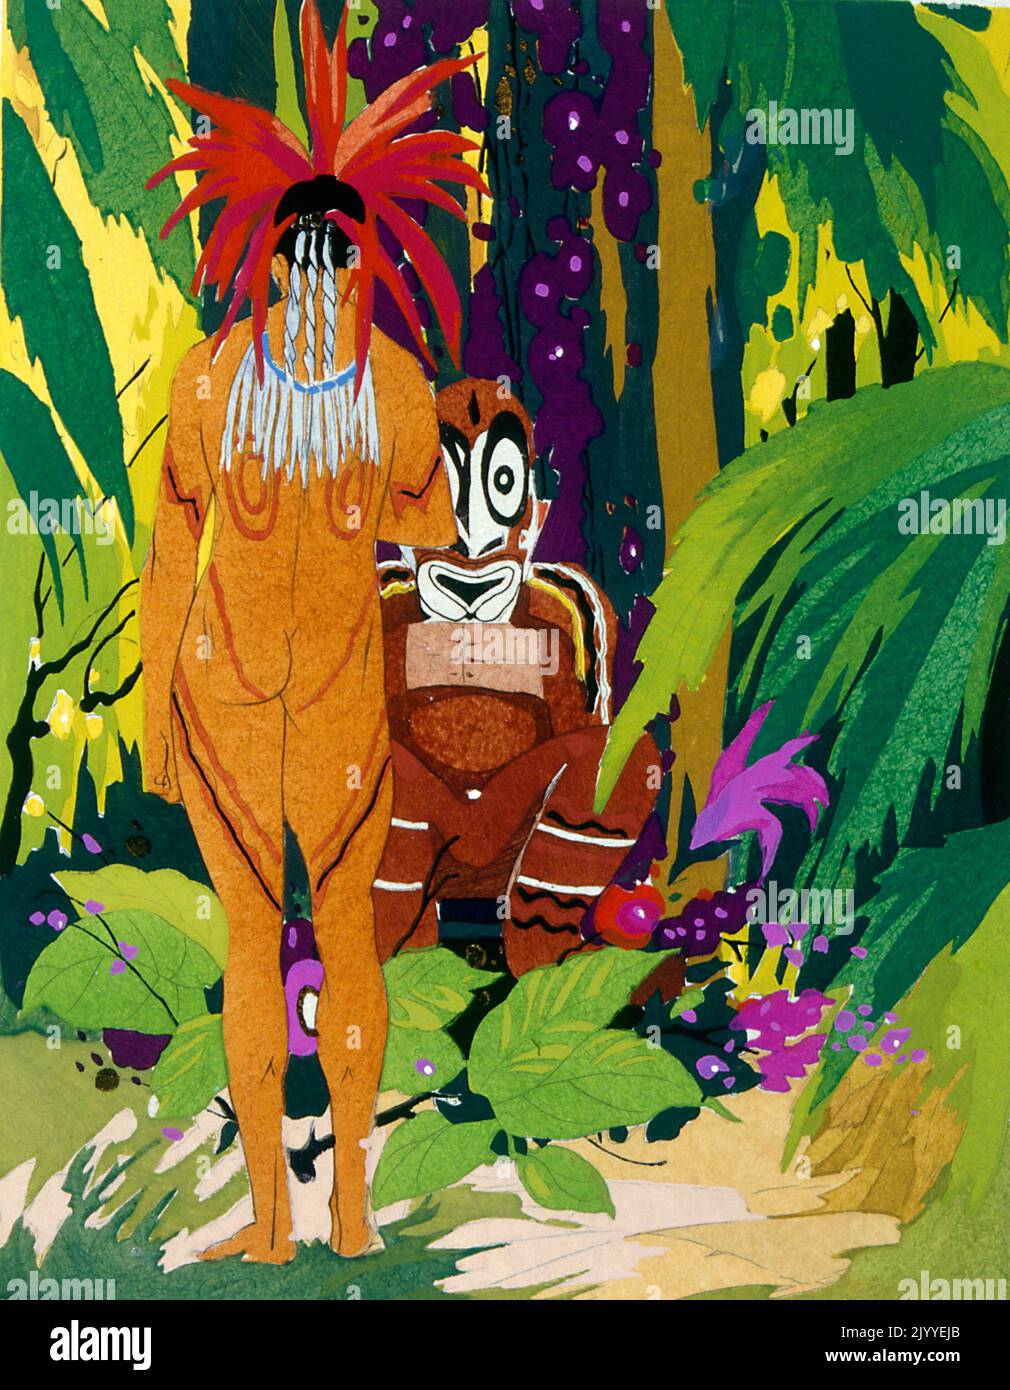 Farbige Illustration, die einen tätowierten Stammesmann mit Kopfschmuck aus Paradiesvögeln zeigt. Scheint aus der Sepik River Region in Papua-Neuguinea zu stammen. Stockfoto